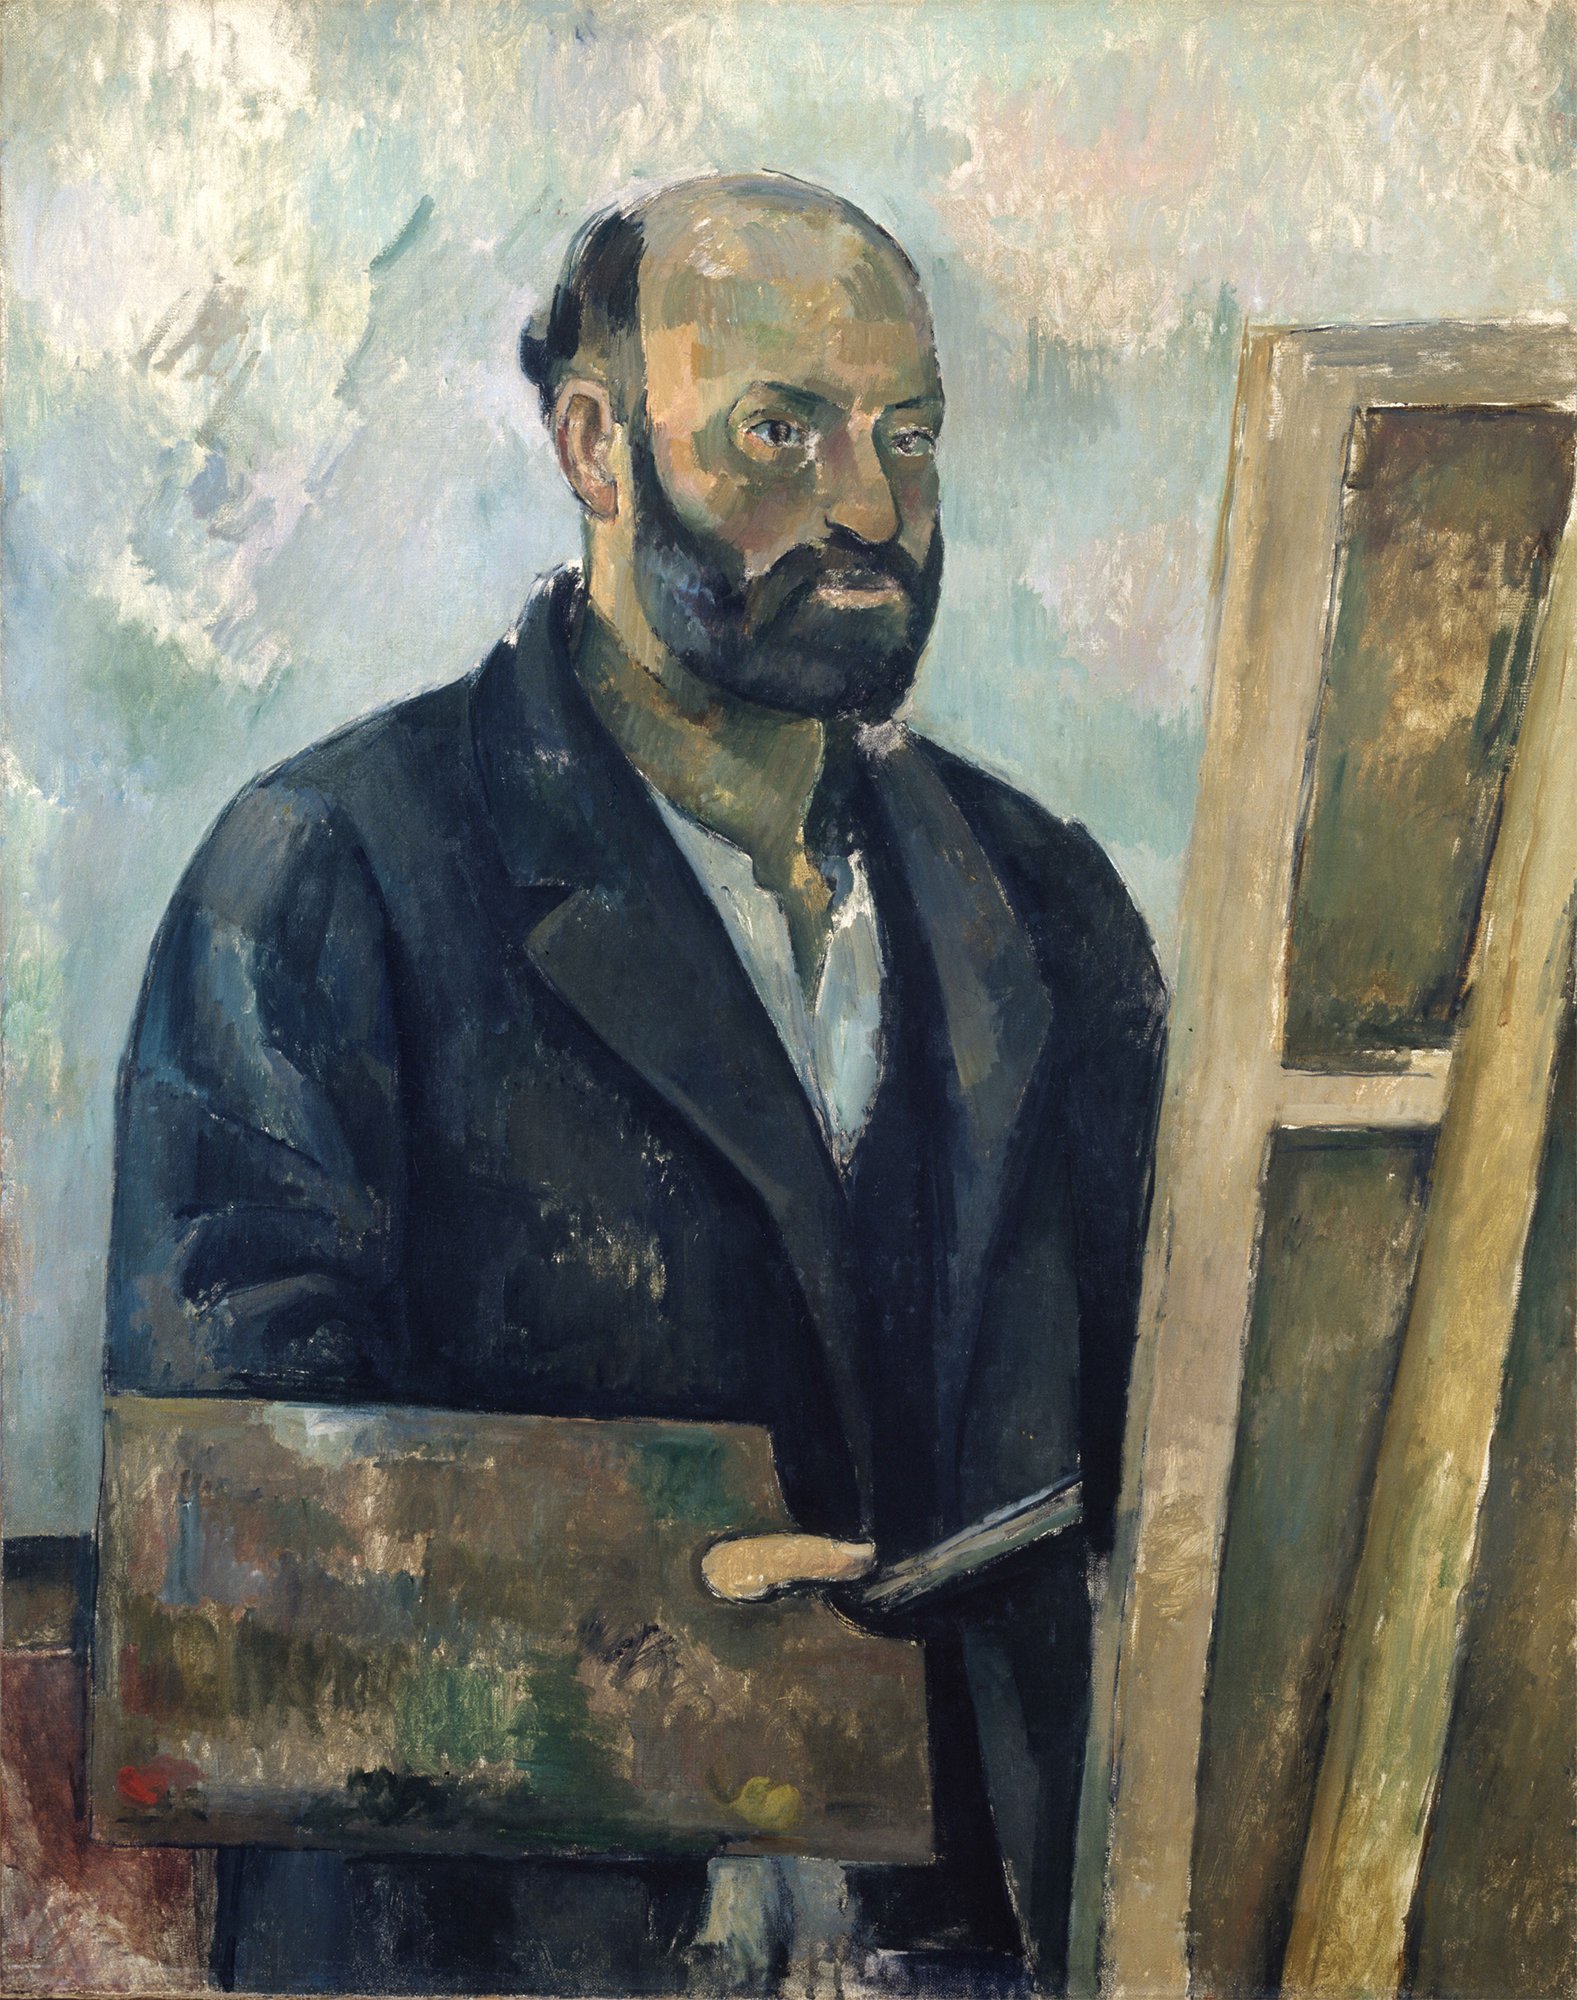 Abbildung des Werks "Selbstbildnis mit Palette" des Künstlers Paul Cézanne, das in der Ausstellung "Cézanne Metamorphosen" vom 28. Oktober 2017 bis 11. Februar 2018 in der Staatlichen Kunsthalle Karlsruhe zu sehen war.